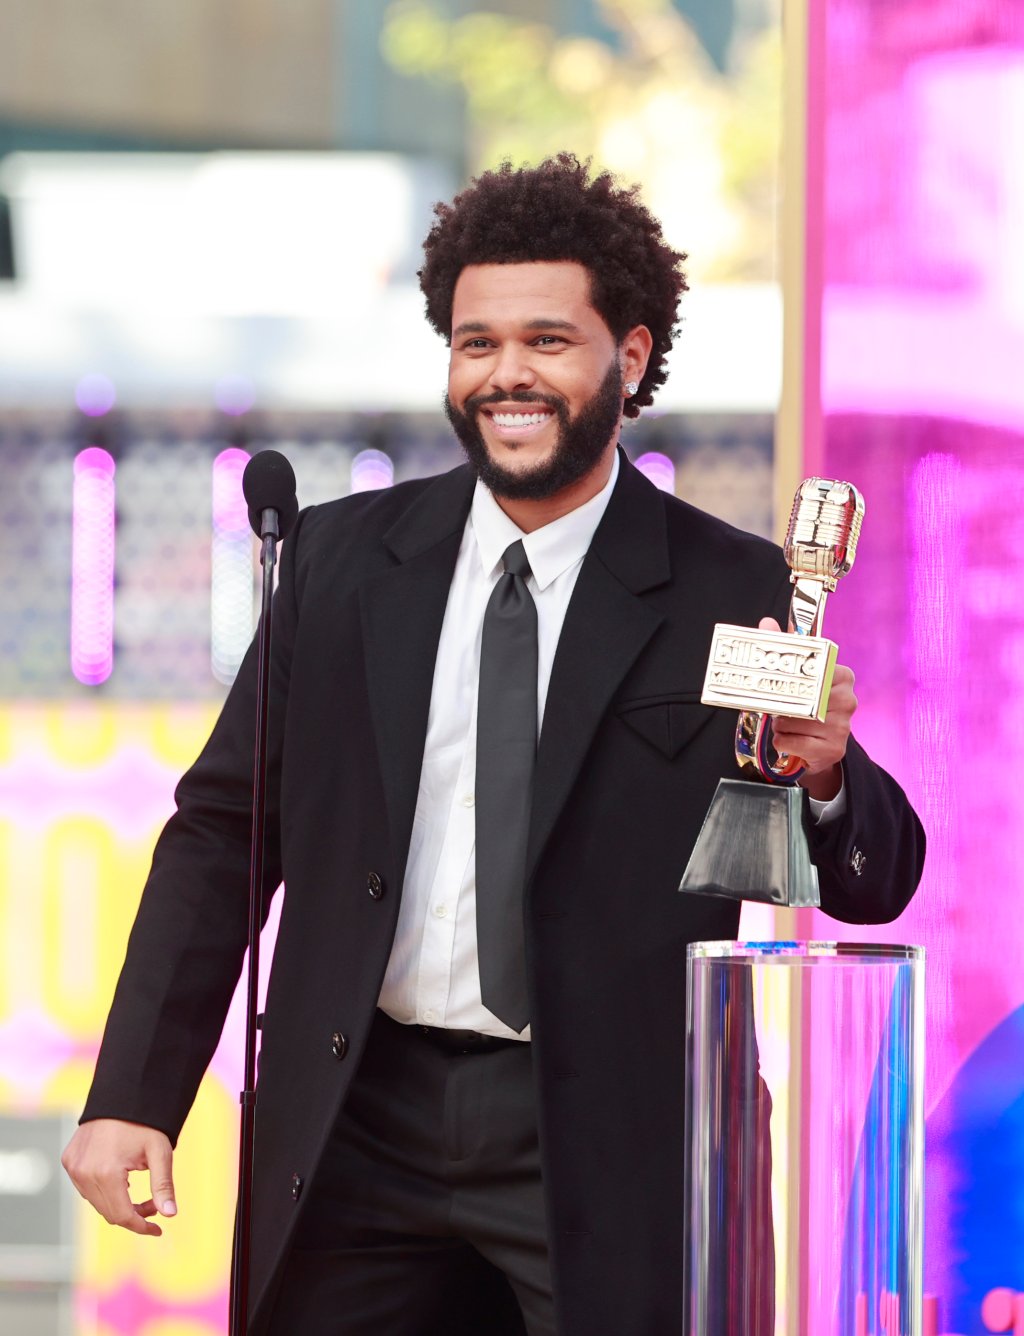 The Weeknd segurando prêmio no Billboard Music Awards 2021. Ele está sorrindo, usando camisa branca, gravata preta, sobretudo preto e calça preta, e há um microfone em sua frente.